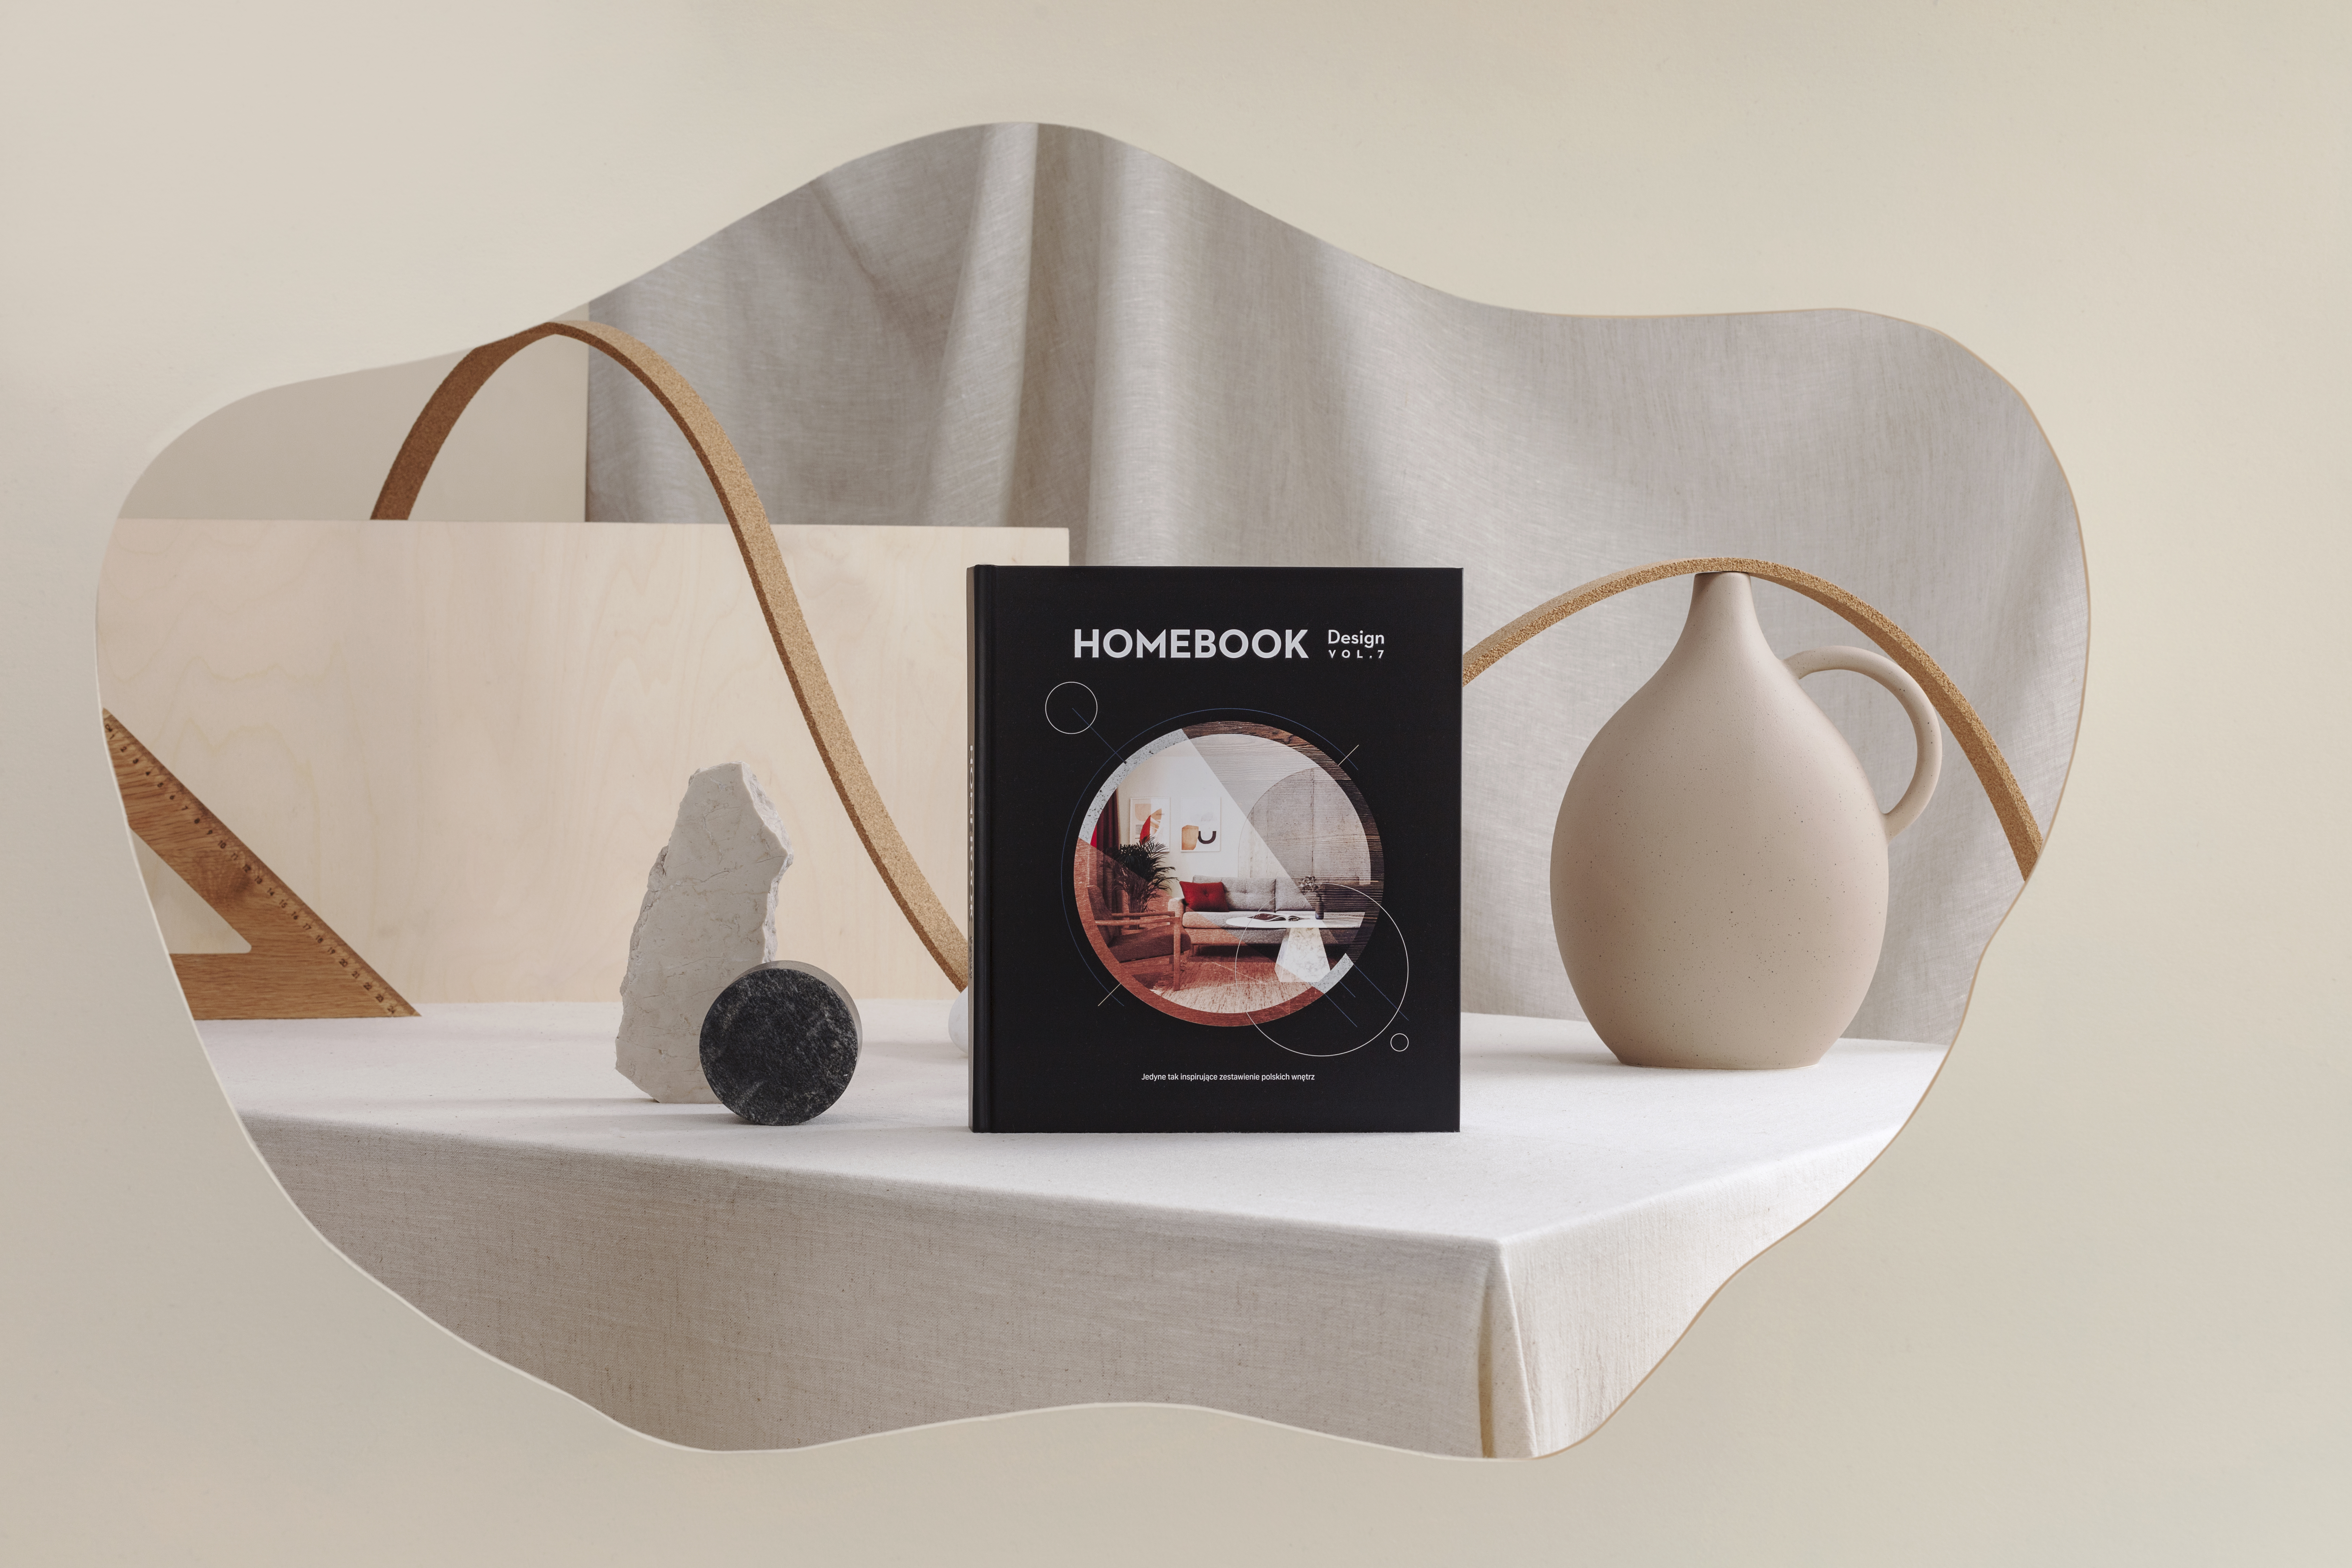 Odpowiedzialny design i ponadczasowe wnętrza - premiera albumu Homebook Design vol. 7